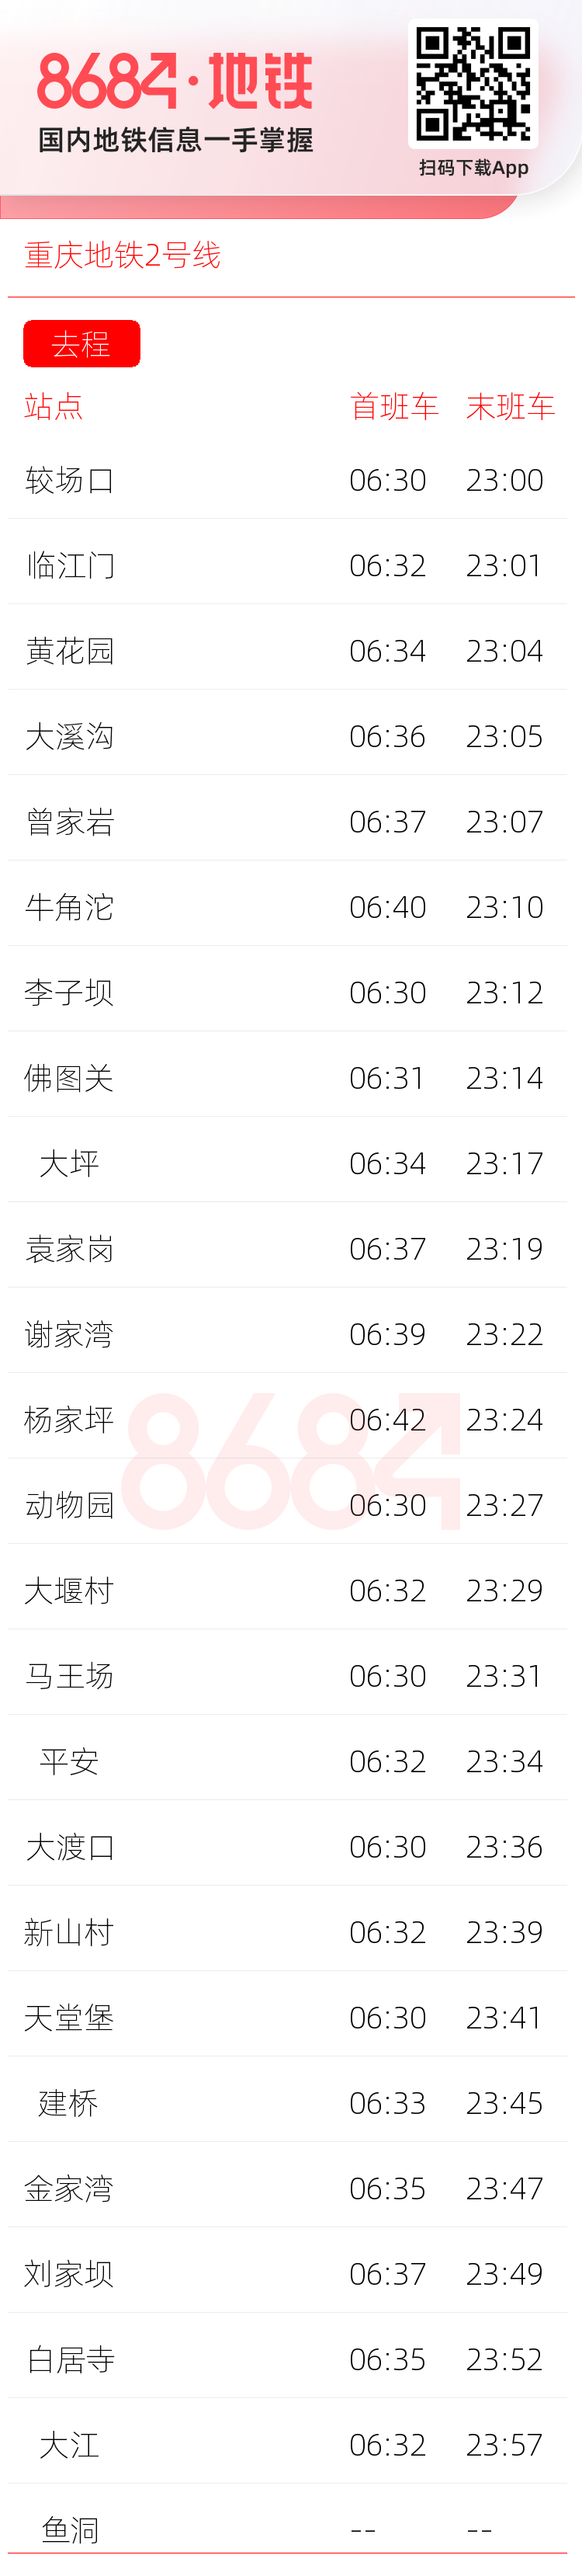 重庆地铁2号线运营时间表